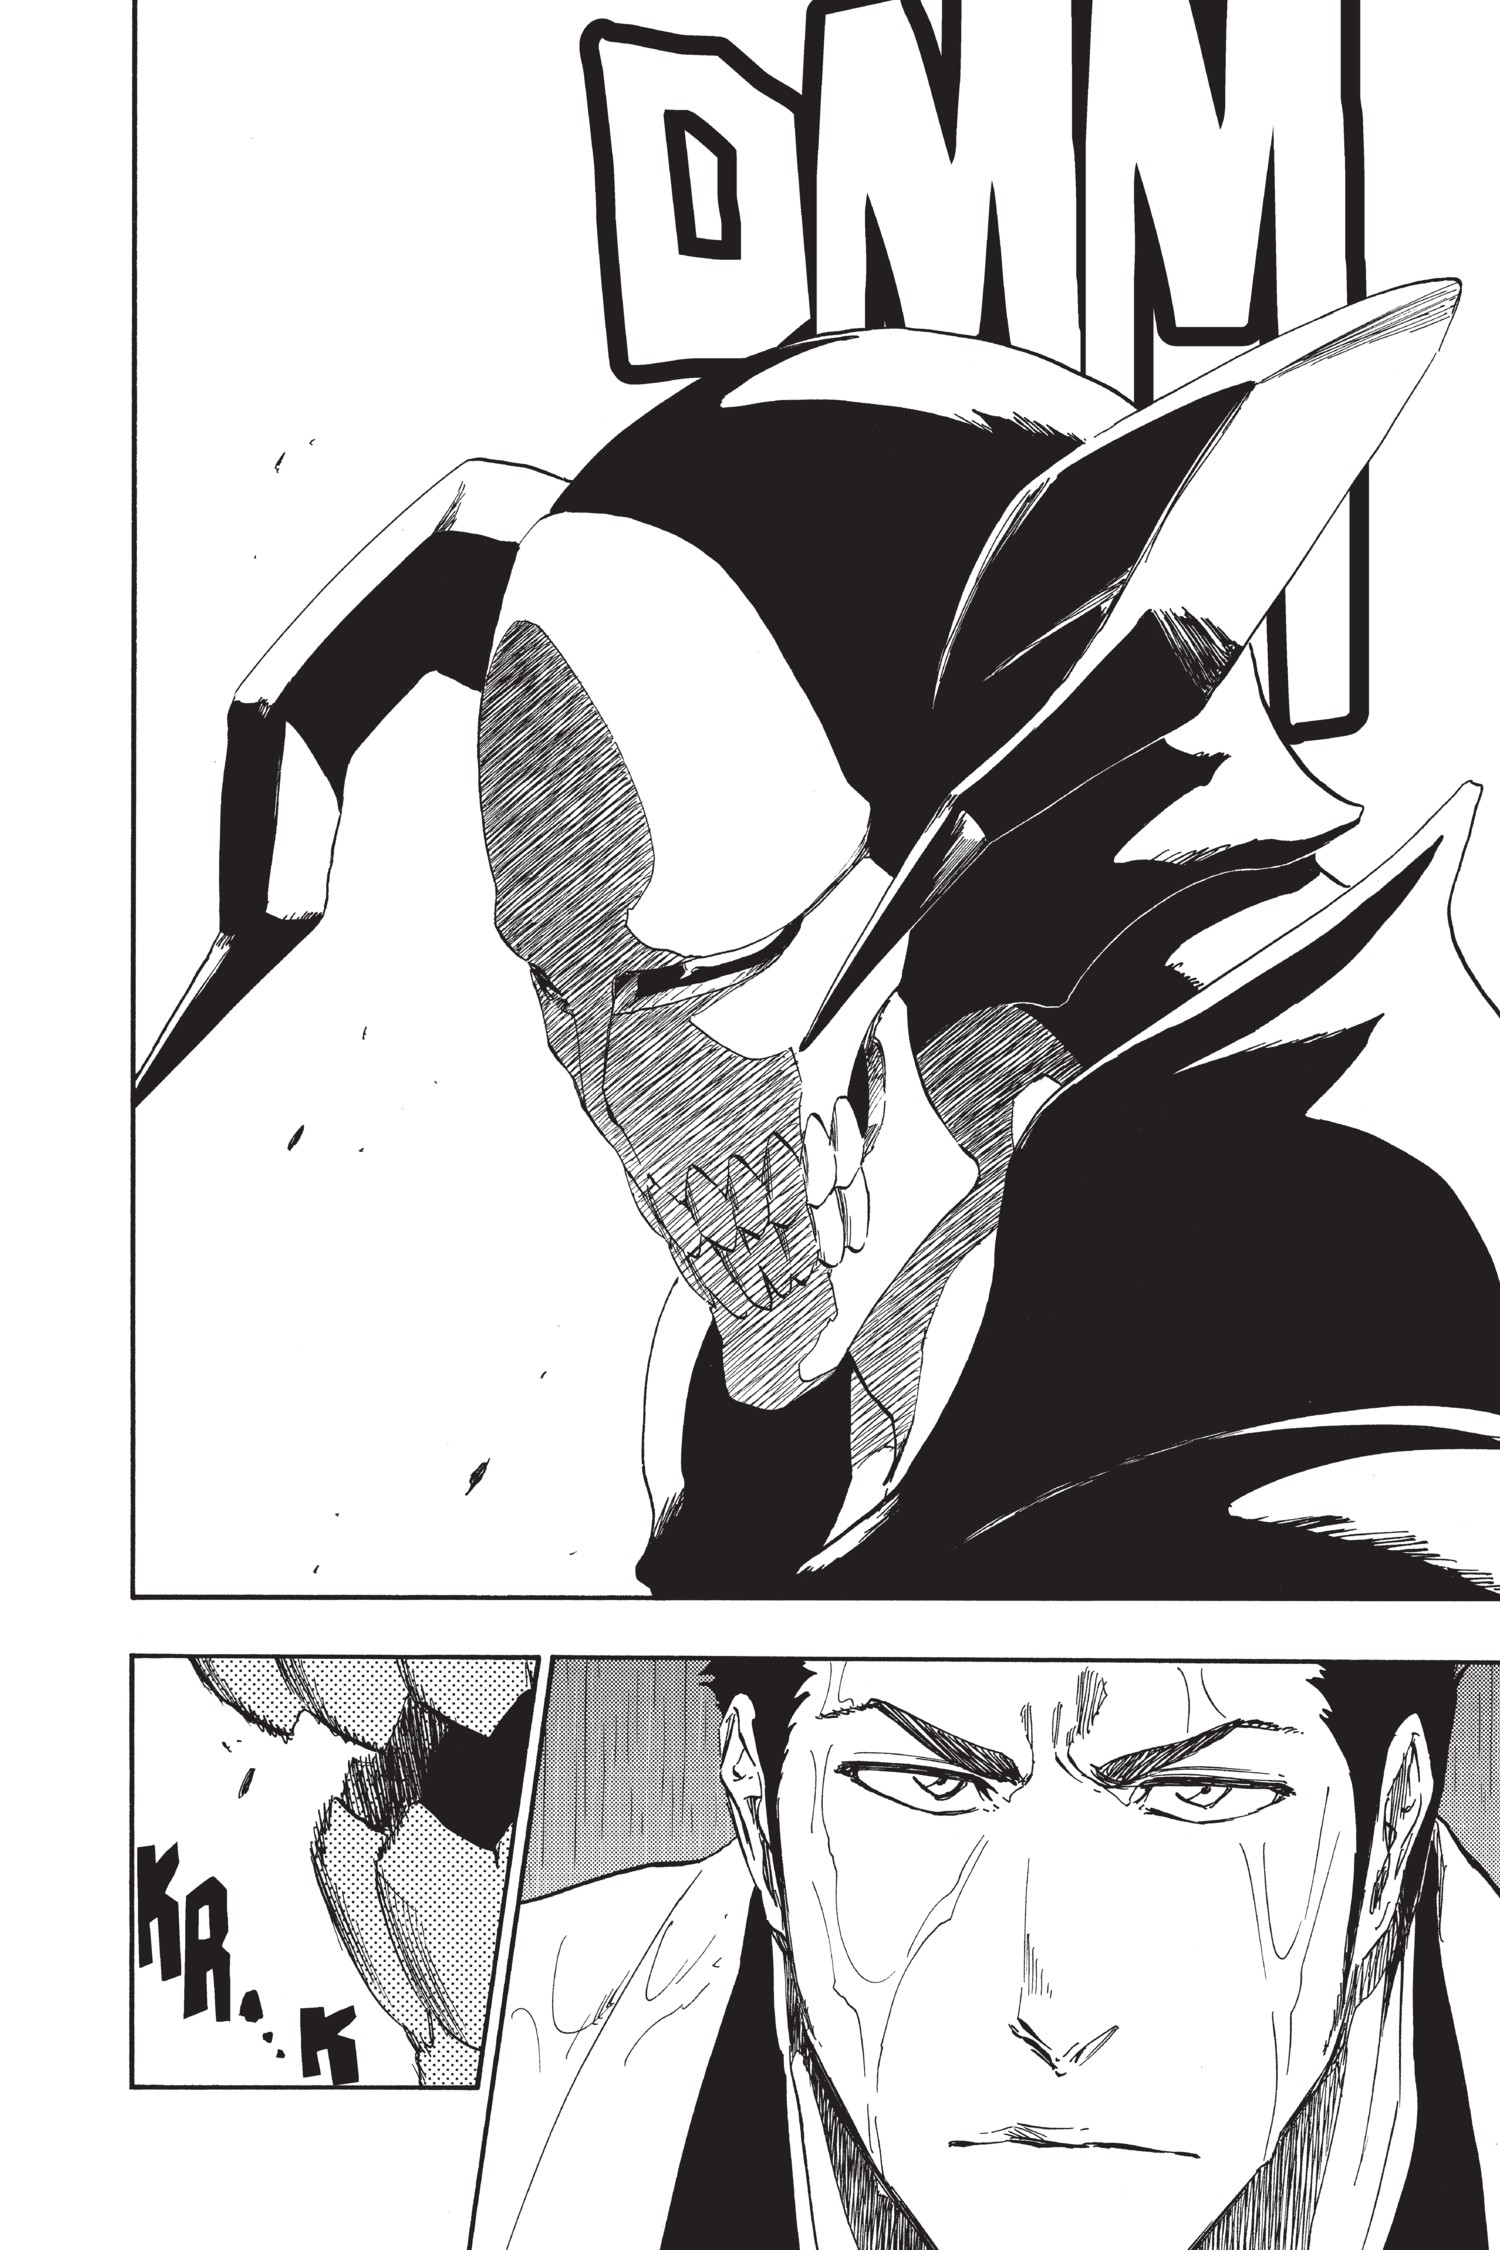 Kurosaki Ichigo/#1463807  Bleach manga, Bleach anime, Bleach (anime)